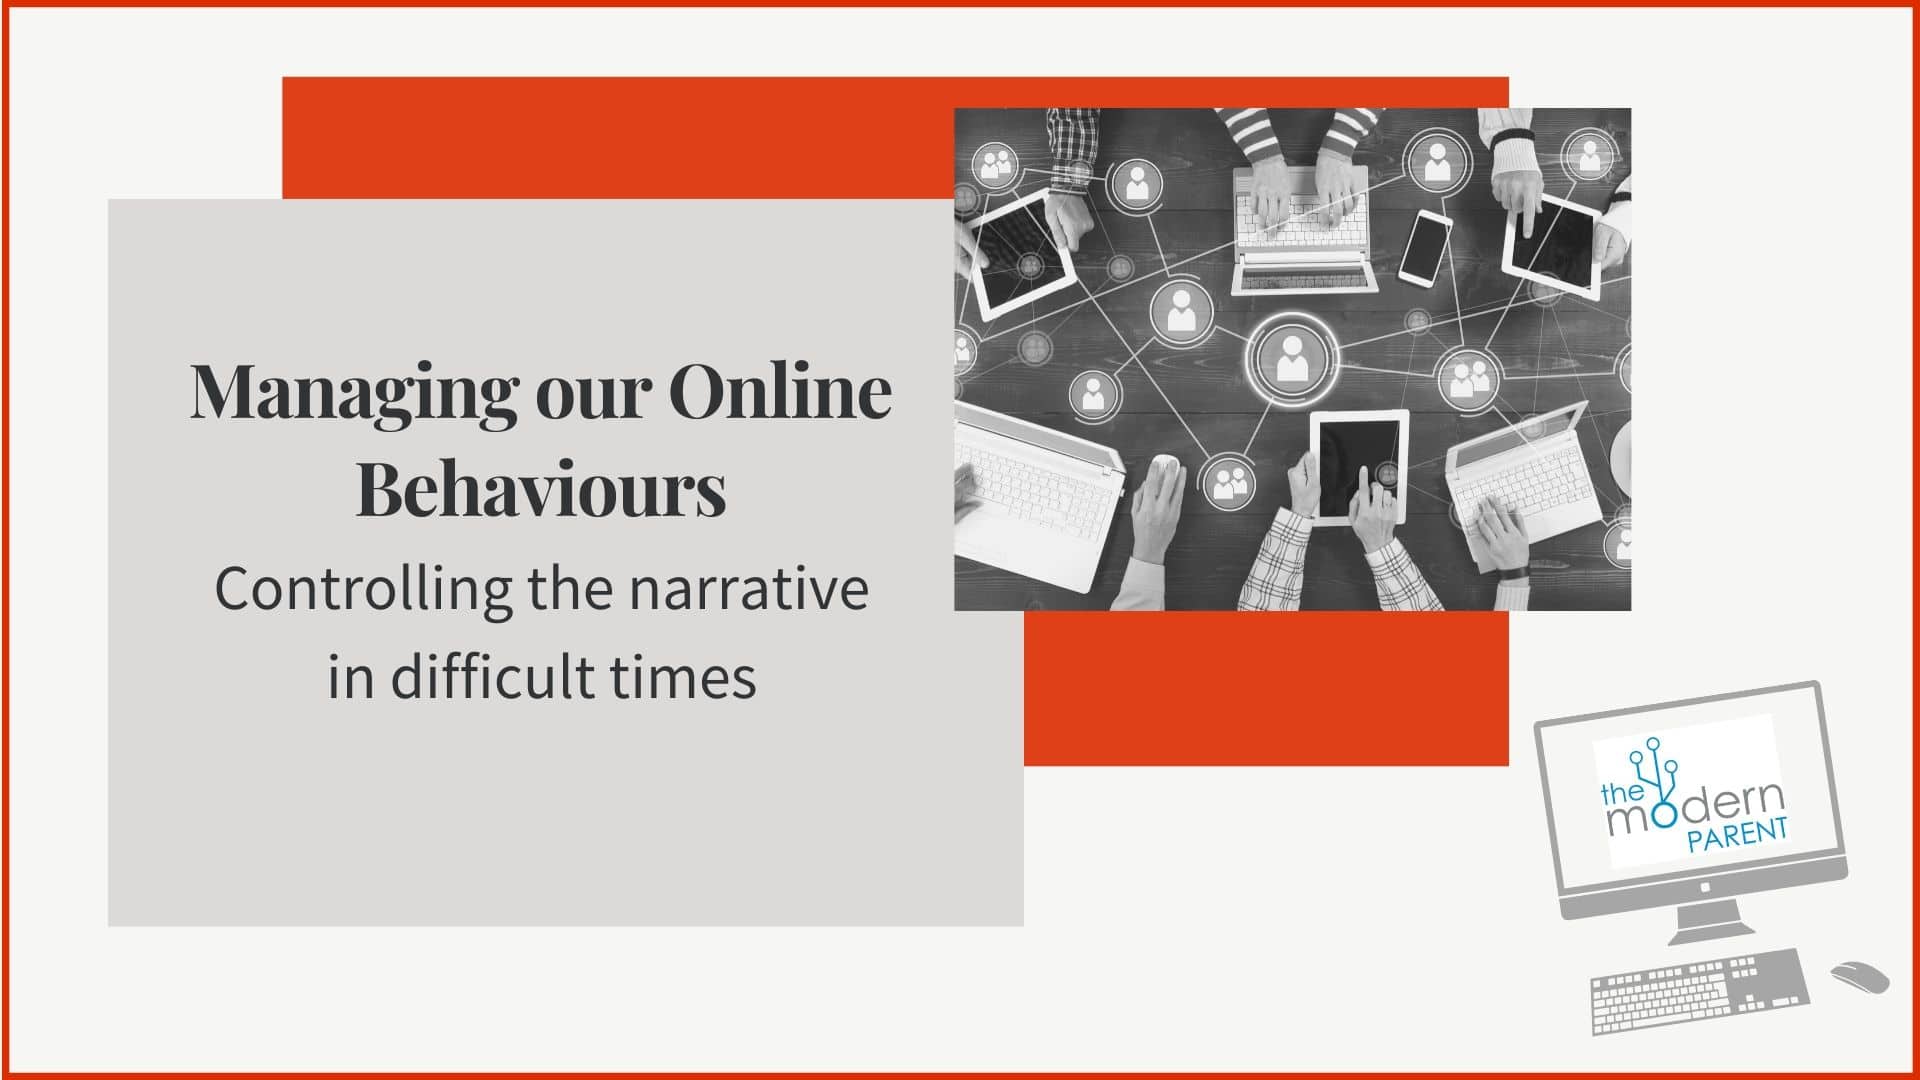 Online behaviours